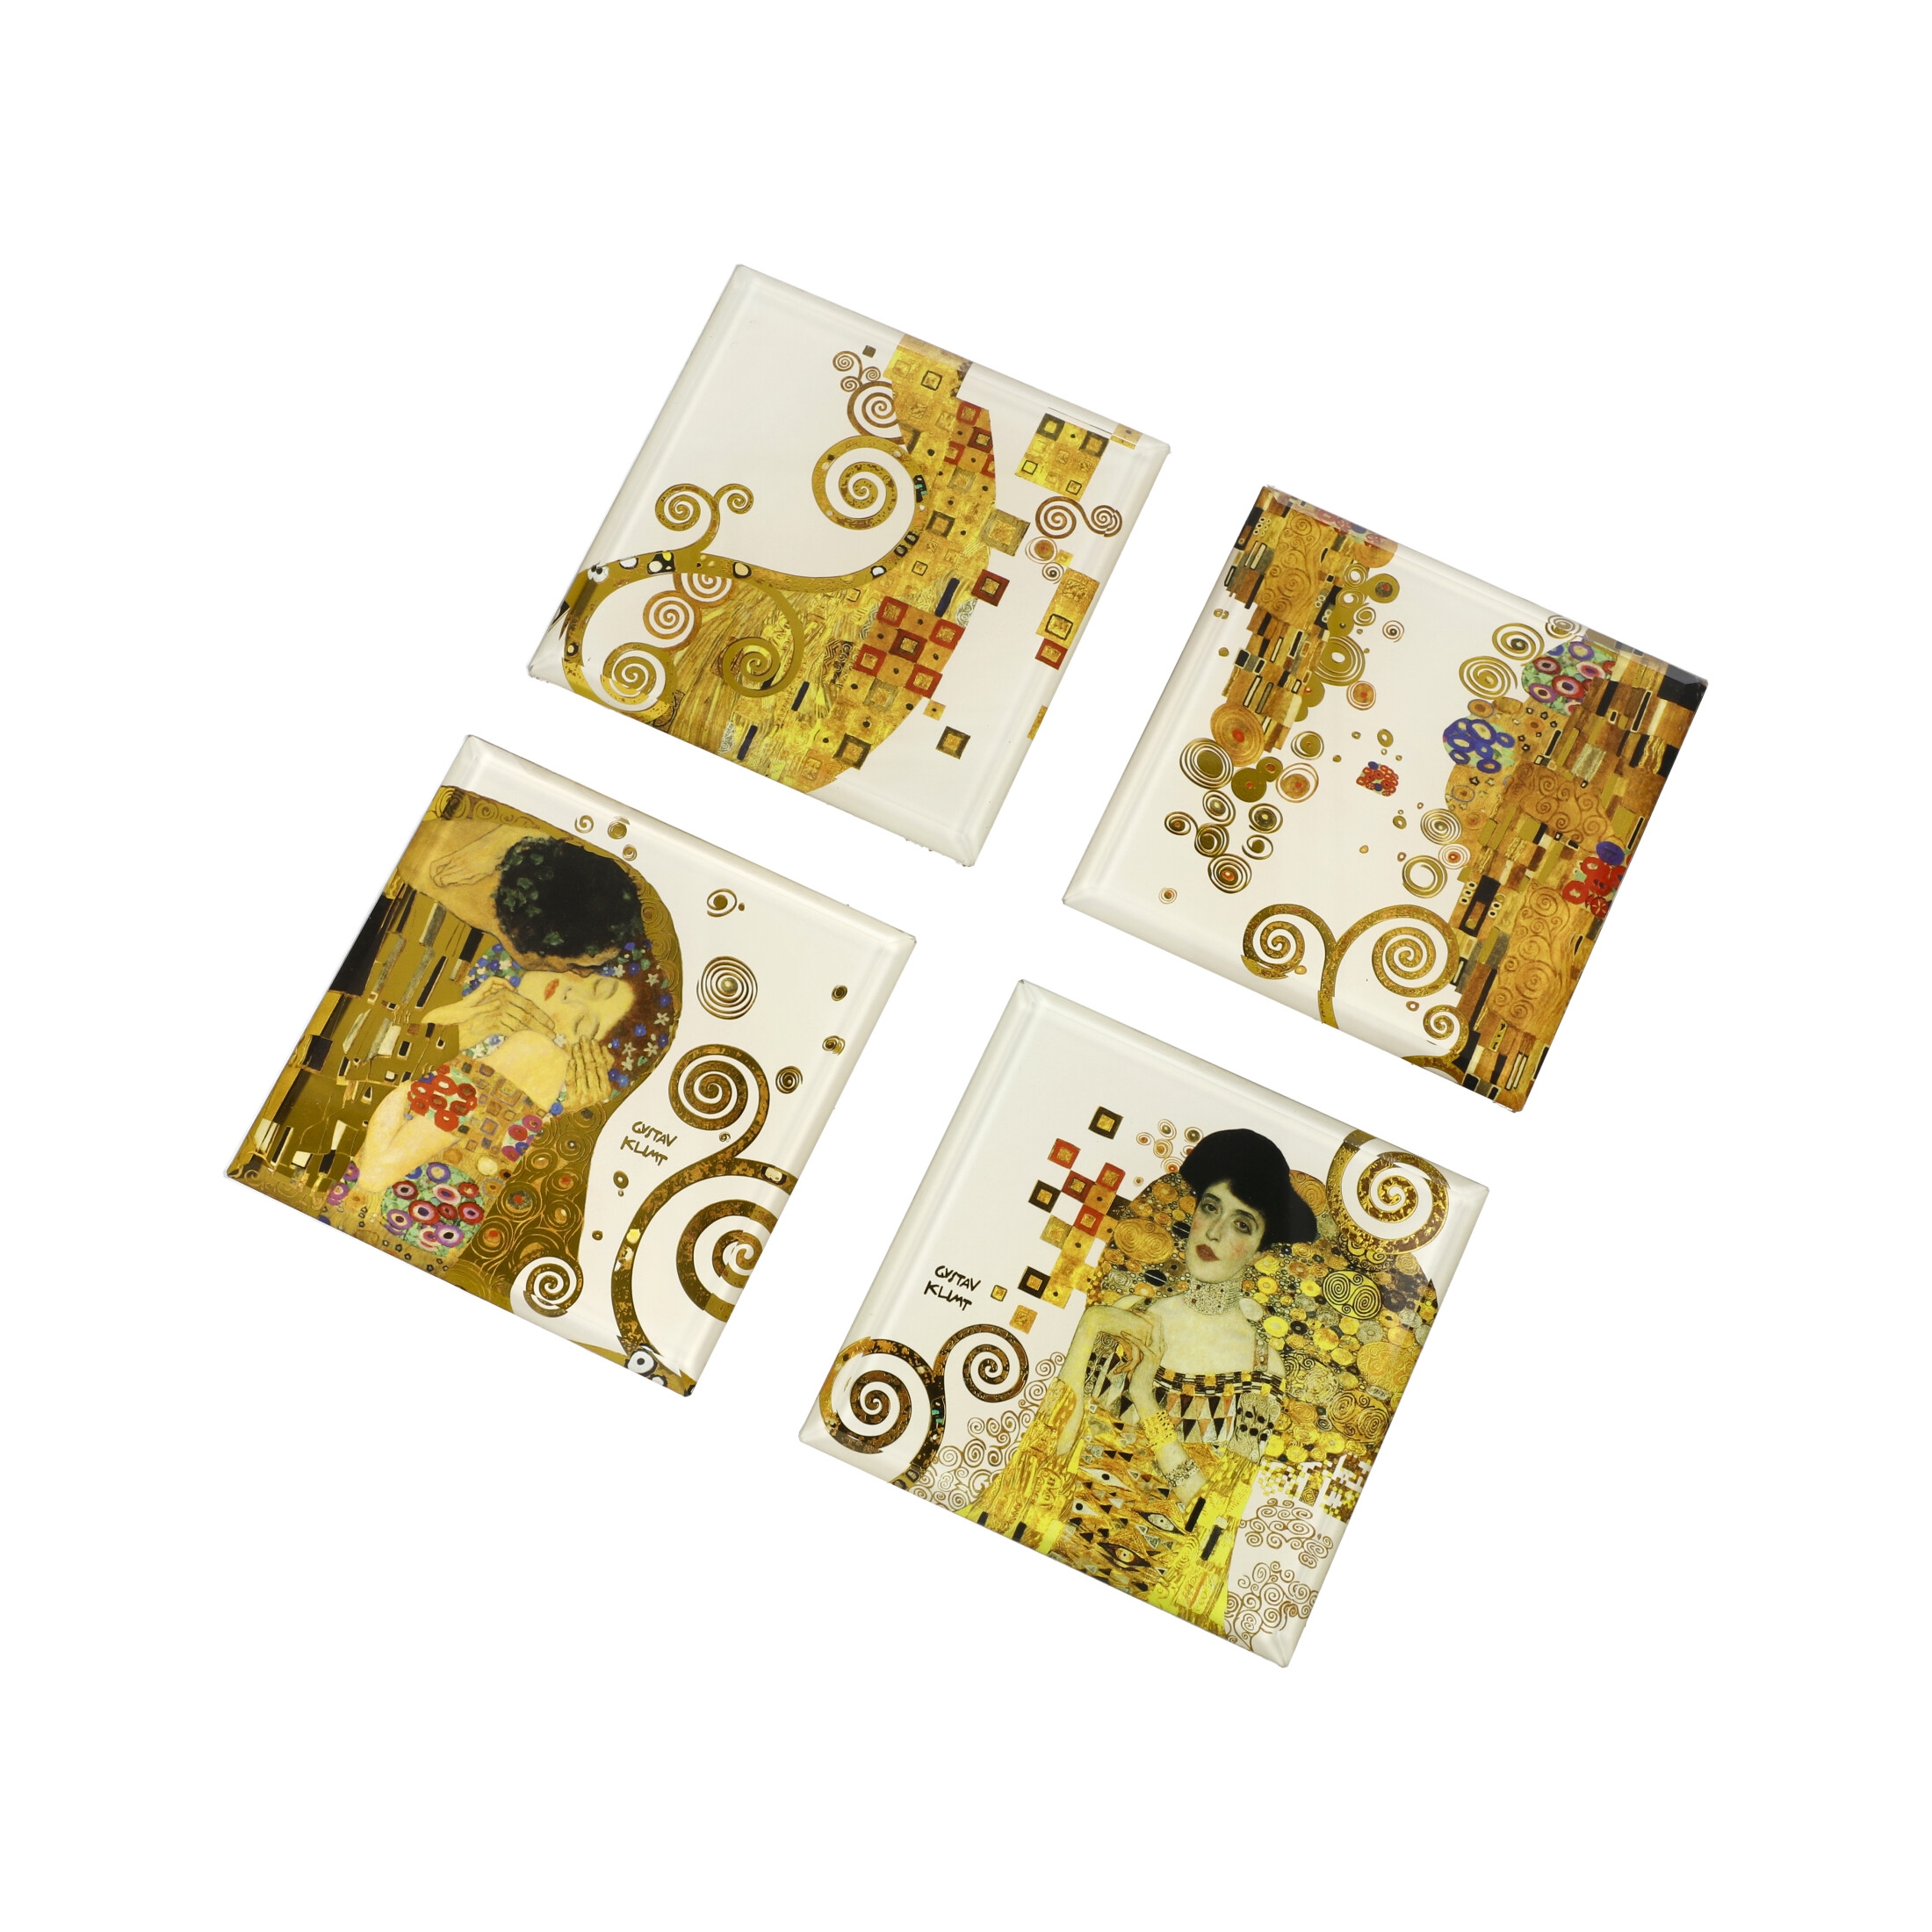 The Kiss - Coaster (Set of 4) Artis Orbis Gustav Klimt